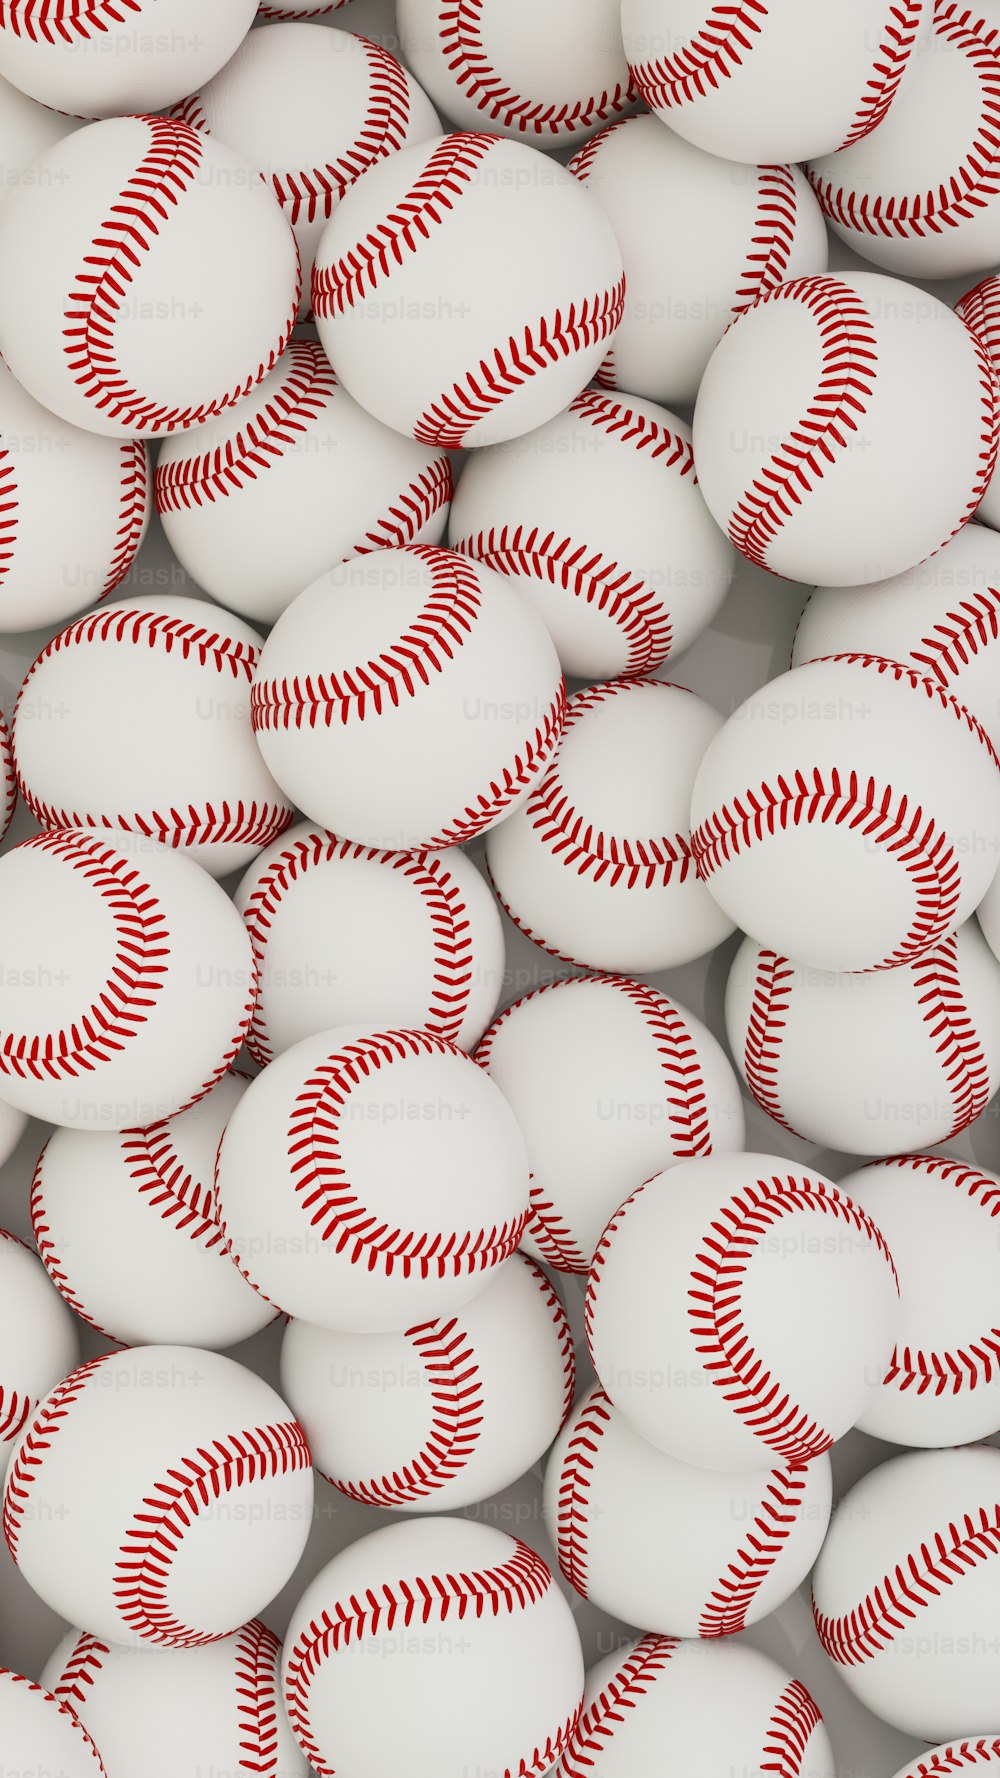 un montón de pelotas de béisbol que son blancas y rojas